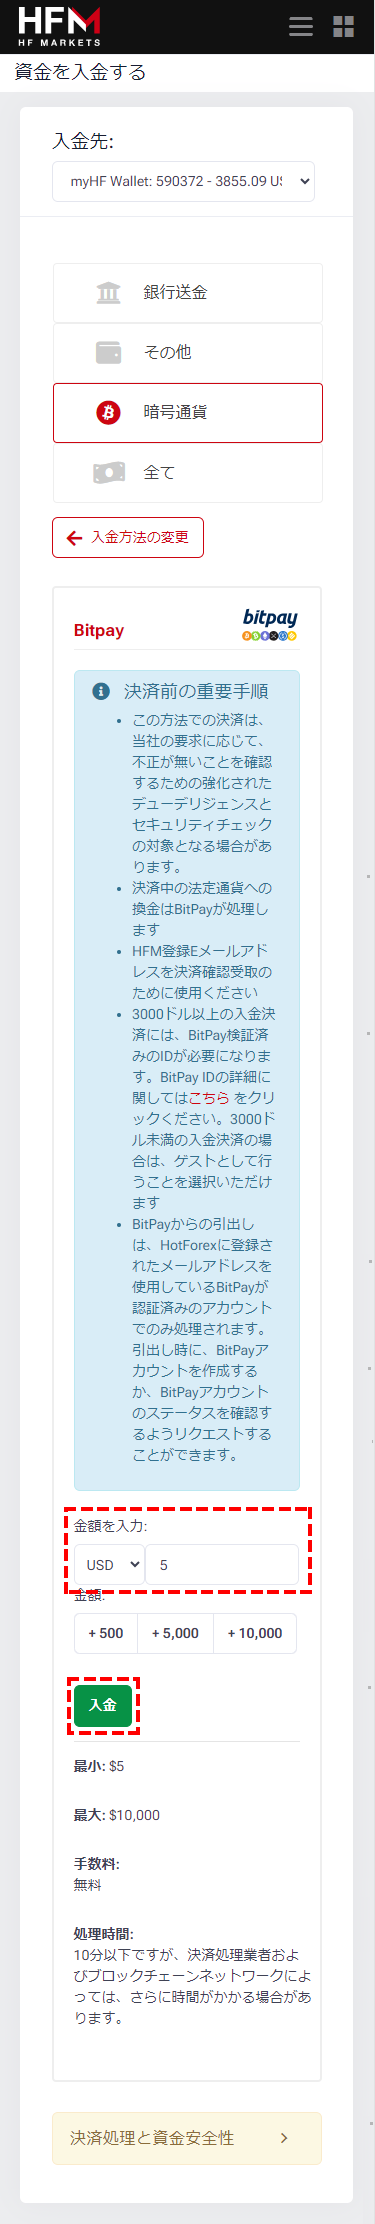 HFM_bitpay入金_入金額を入金_スマホ画面